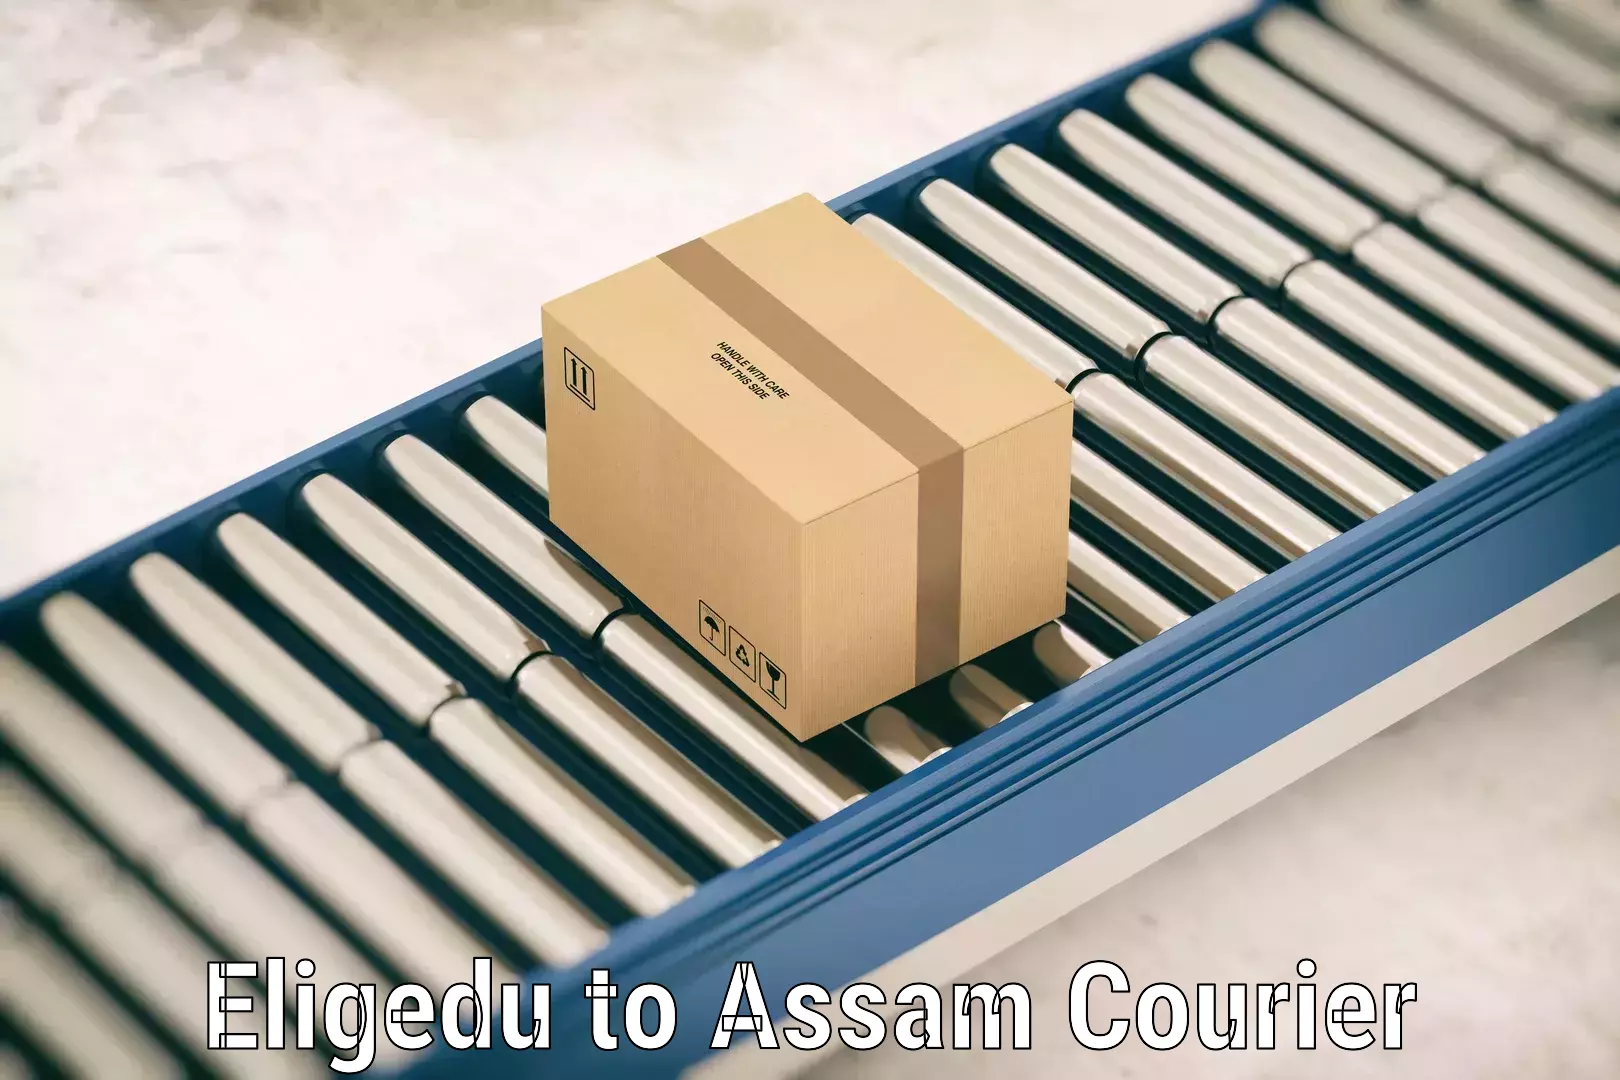 Luggage transport company Eligedu to Lala Assam